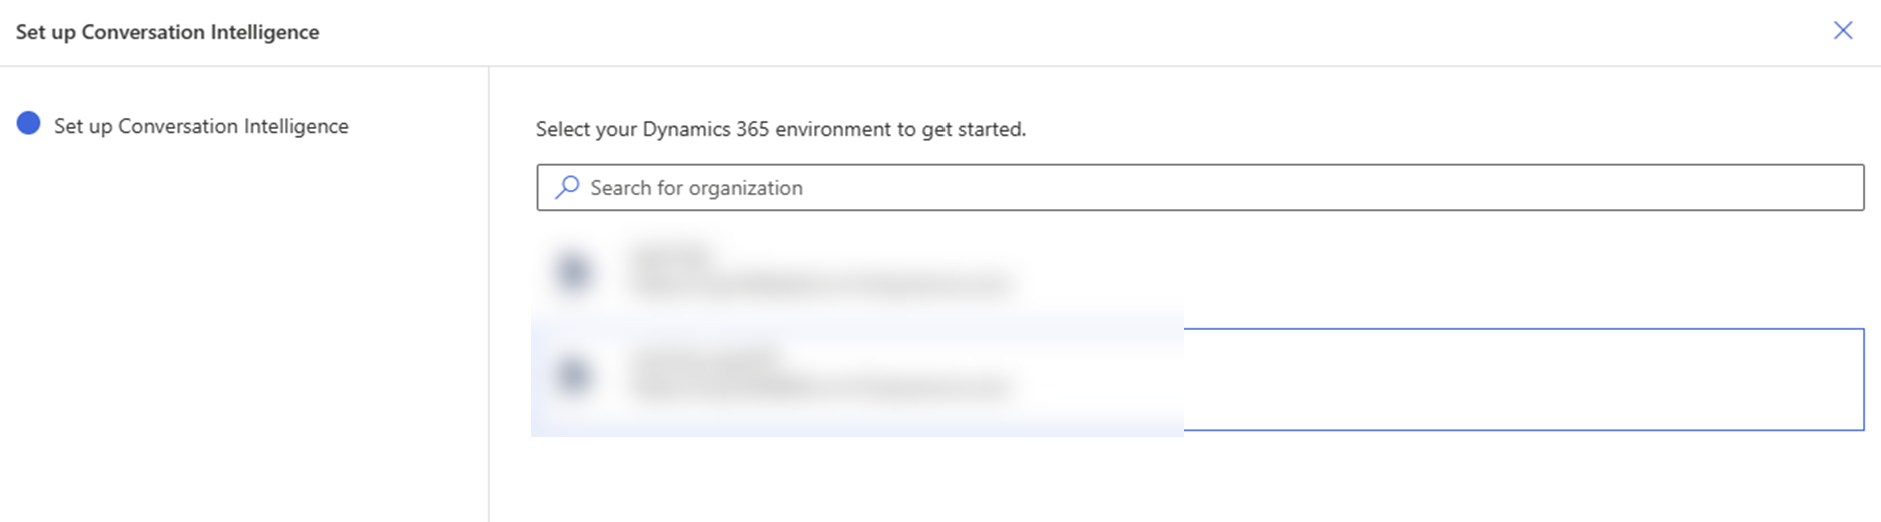 Select Dynamics 365 Sales environment.